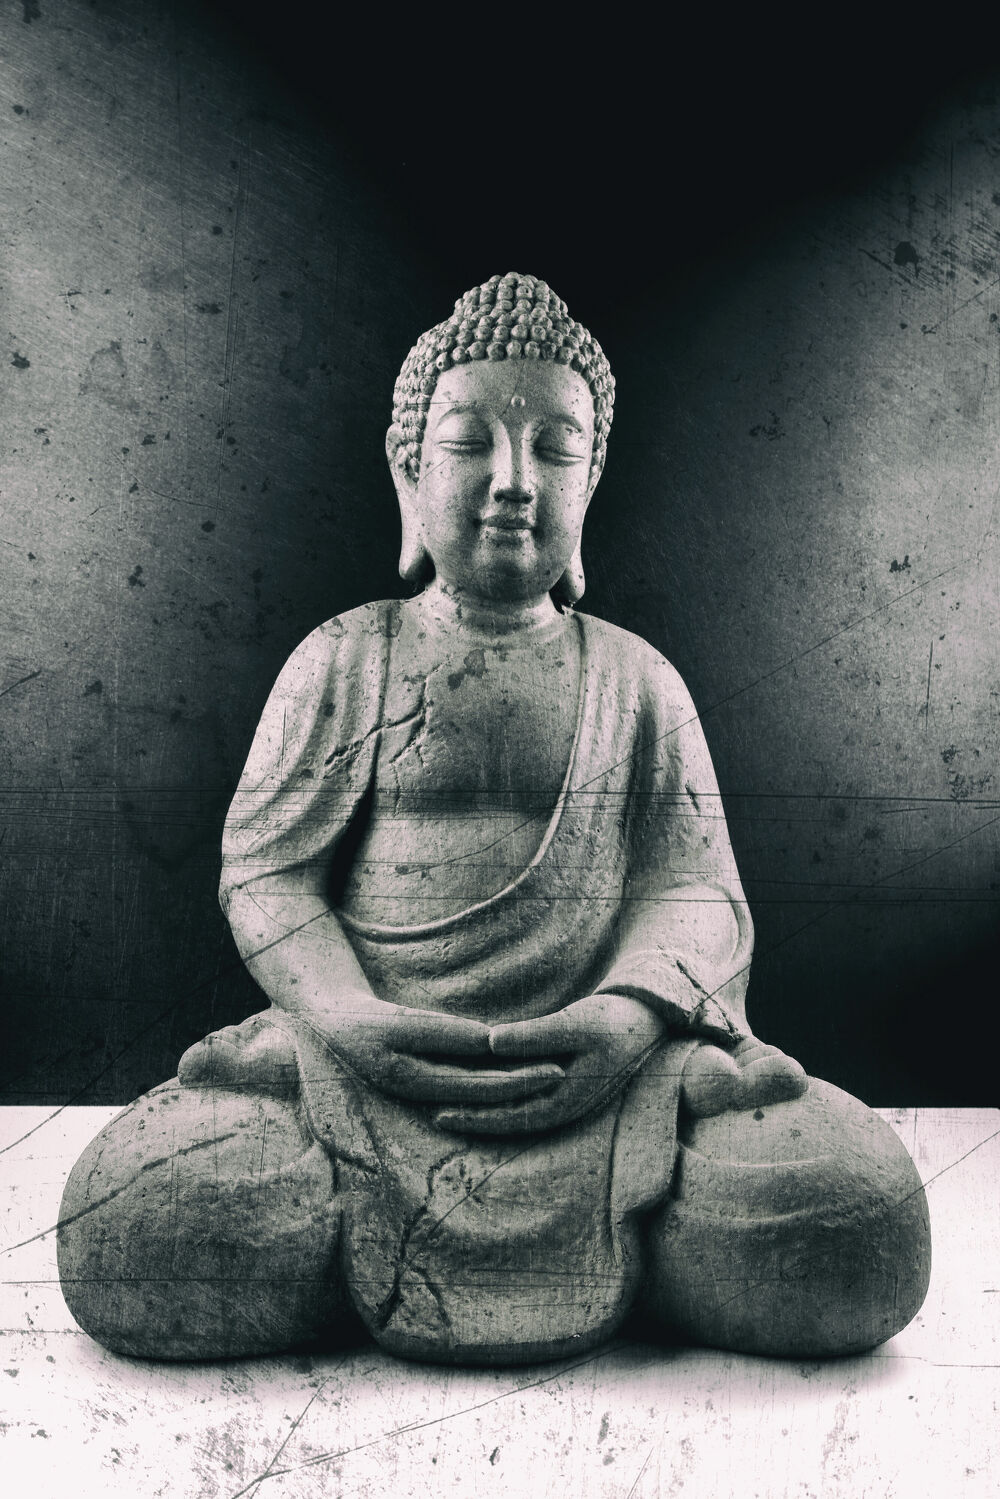 Bild mit Meditation, Ruhe, Entspannung, Buddha, Wellness, Spa, Buddhismus, Yoga, Religion, Glauben, zen, Ausgeglichenheit